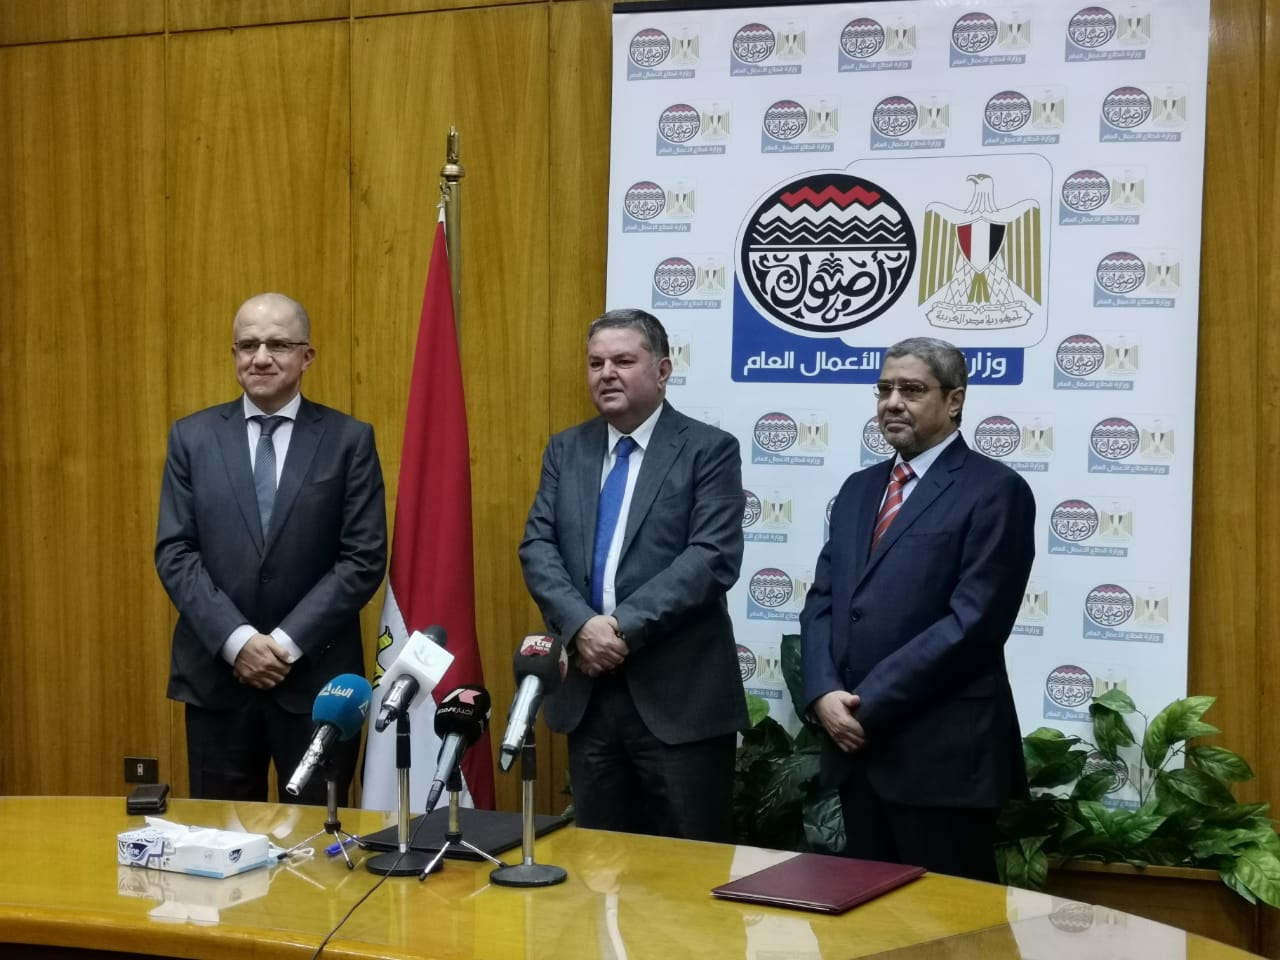 وزارة قطاع الأعمال العام توقع بروتوكول مع اتحادي الغرف التجارية والصناعات للتعاون بشأن الكتالوج الإلكترونى للمنتجات المصرية ومدخلاتها